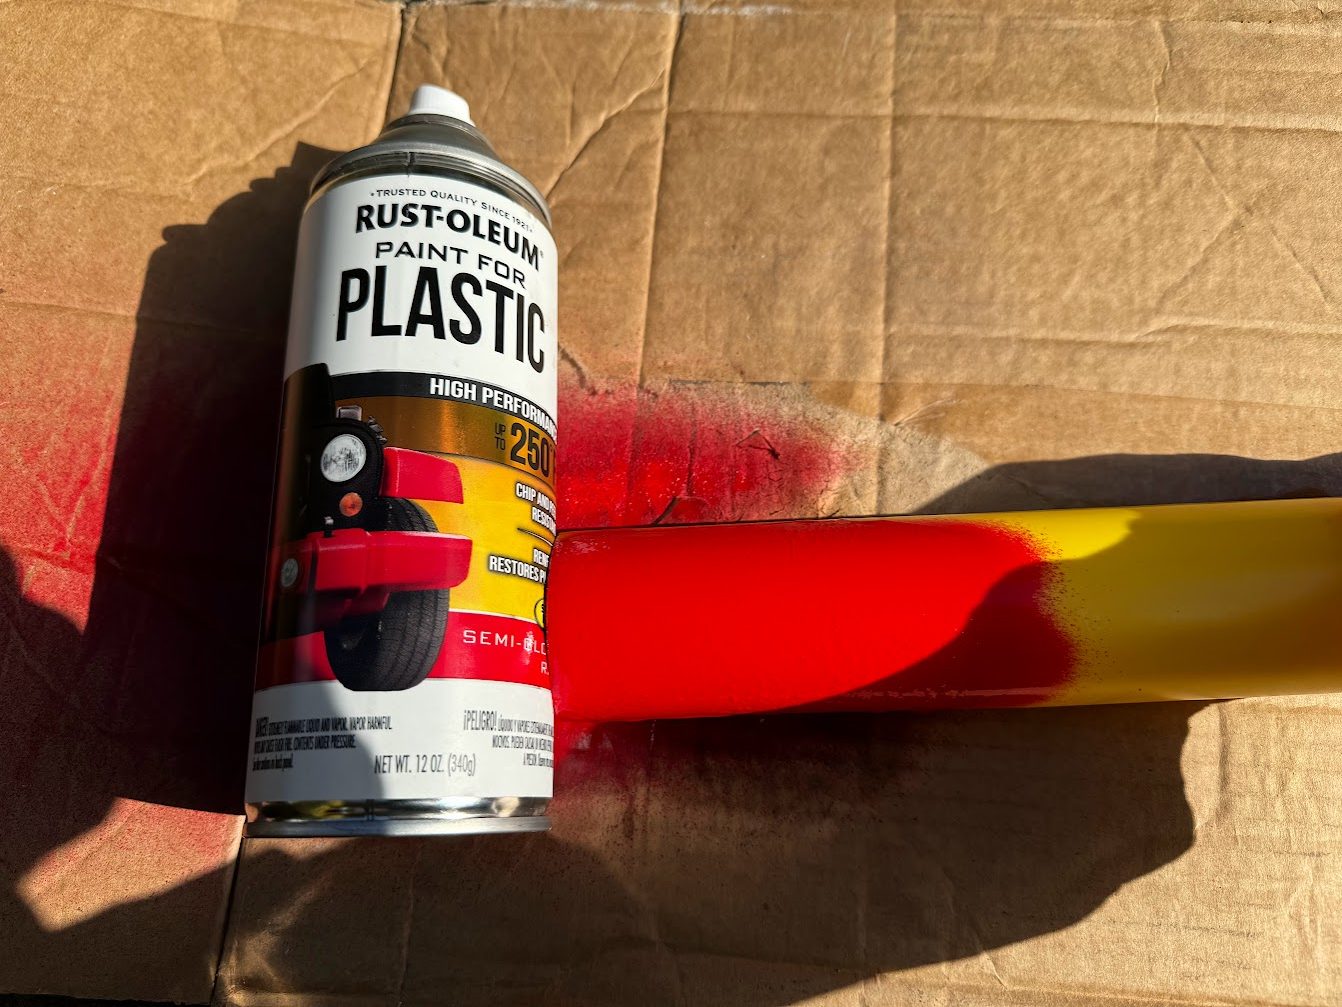 Rustoleum for plastic test